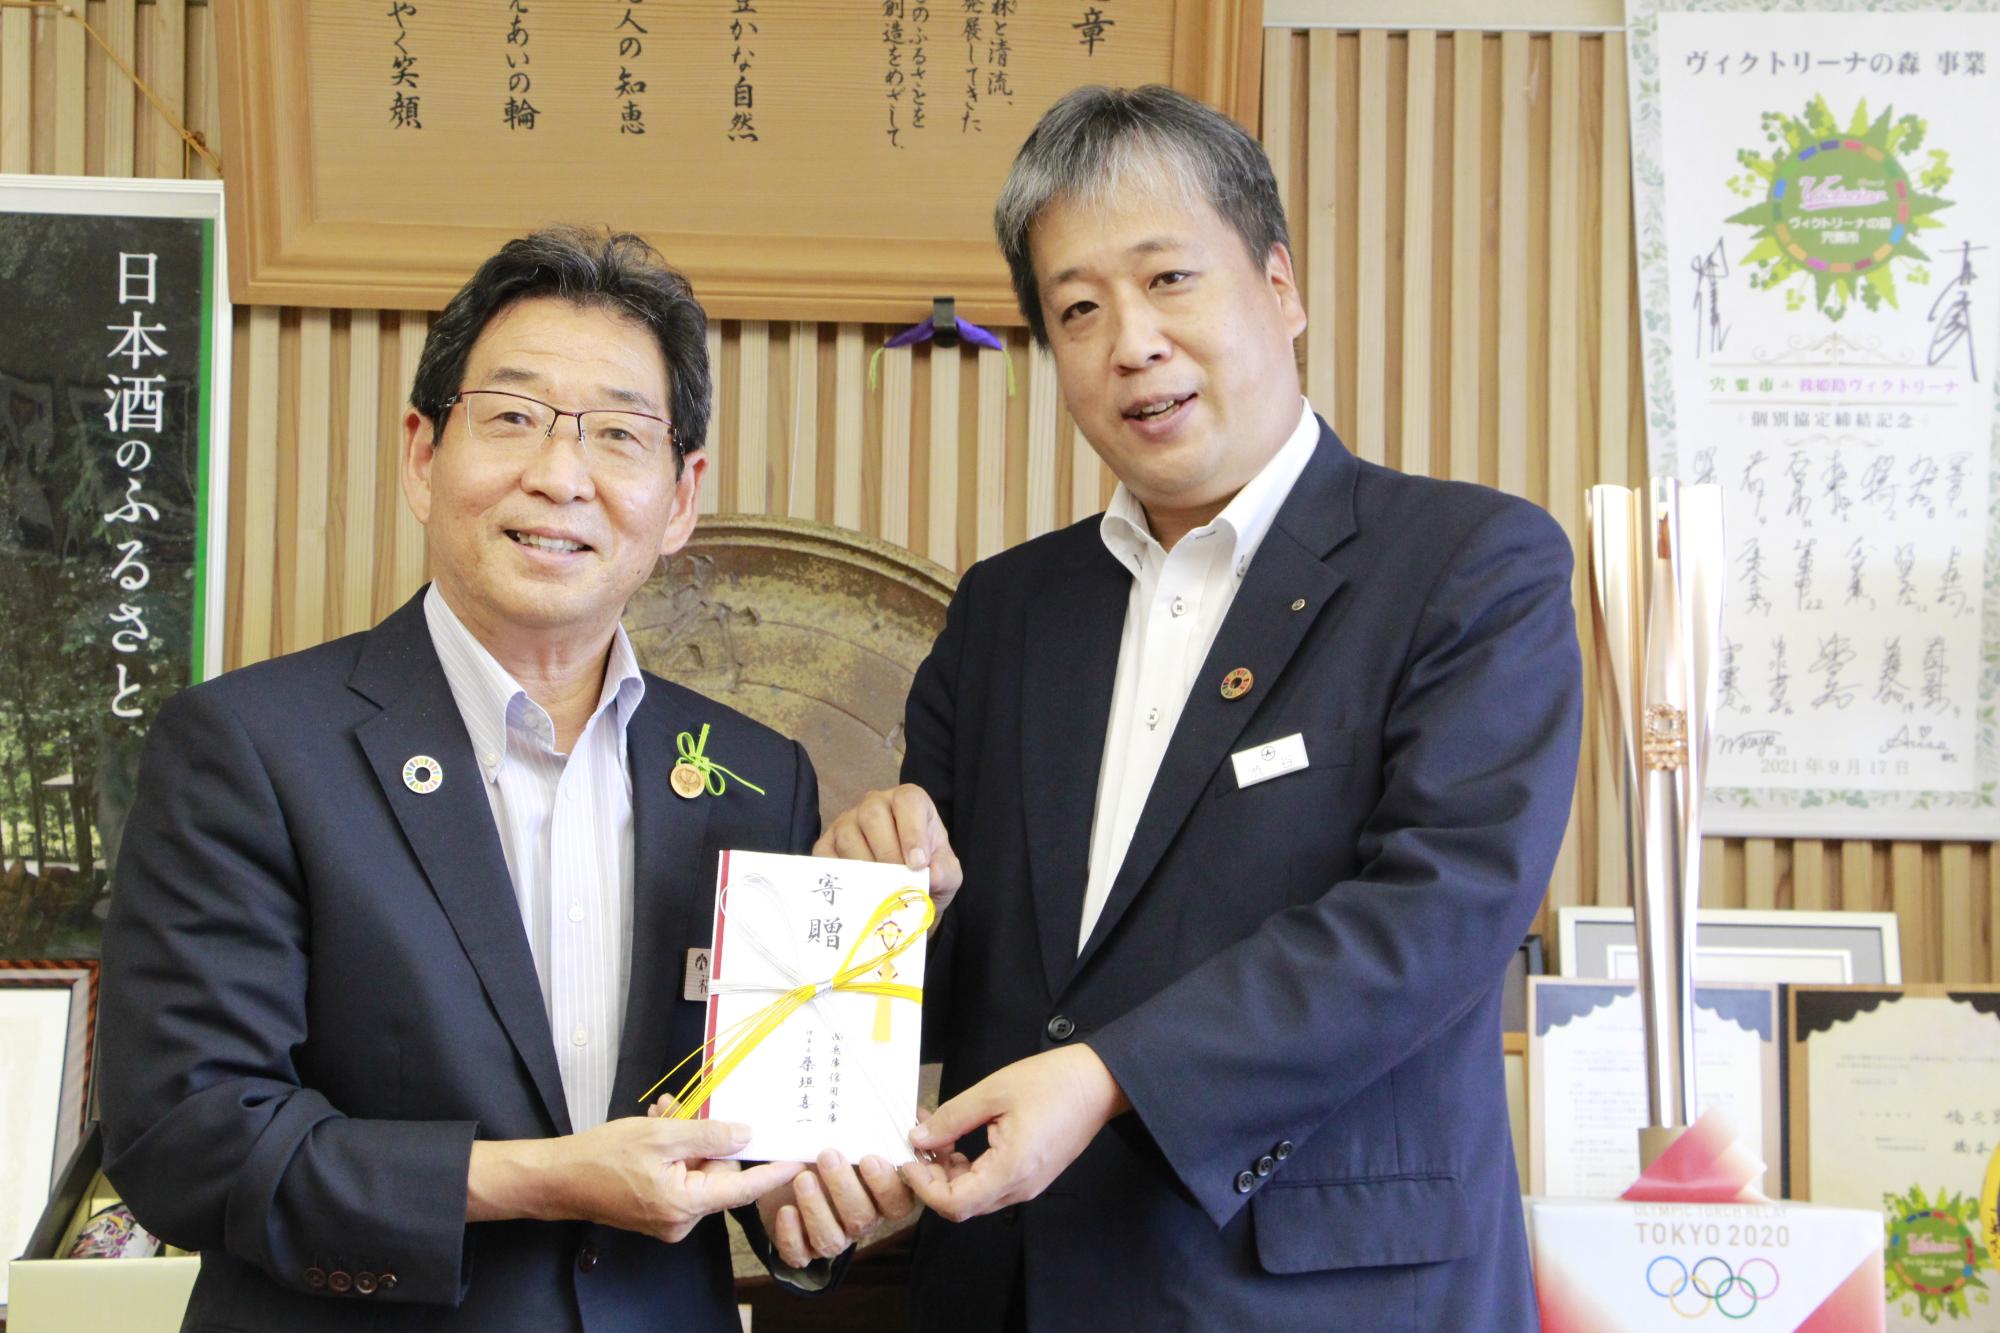 左、西兵庫信用金庫本店の渋谷営業部長から寄付を受け取る、右、福元市長の写真